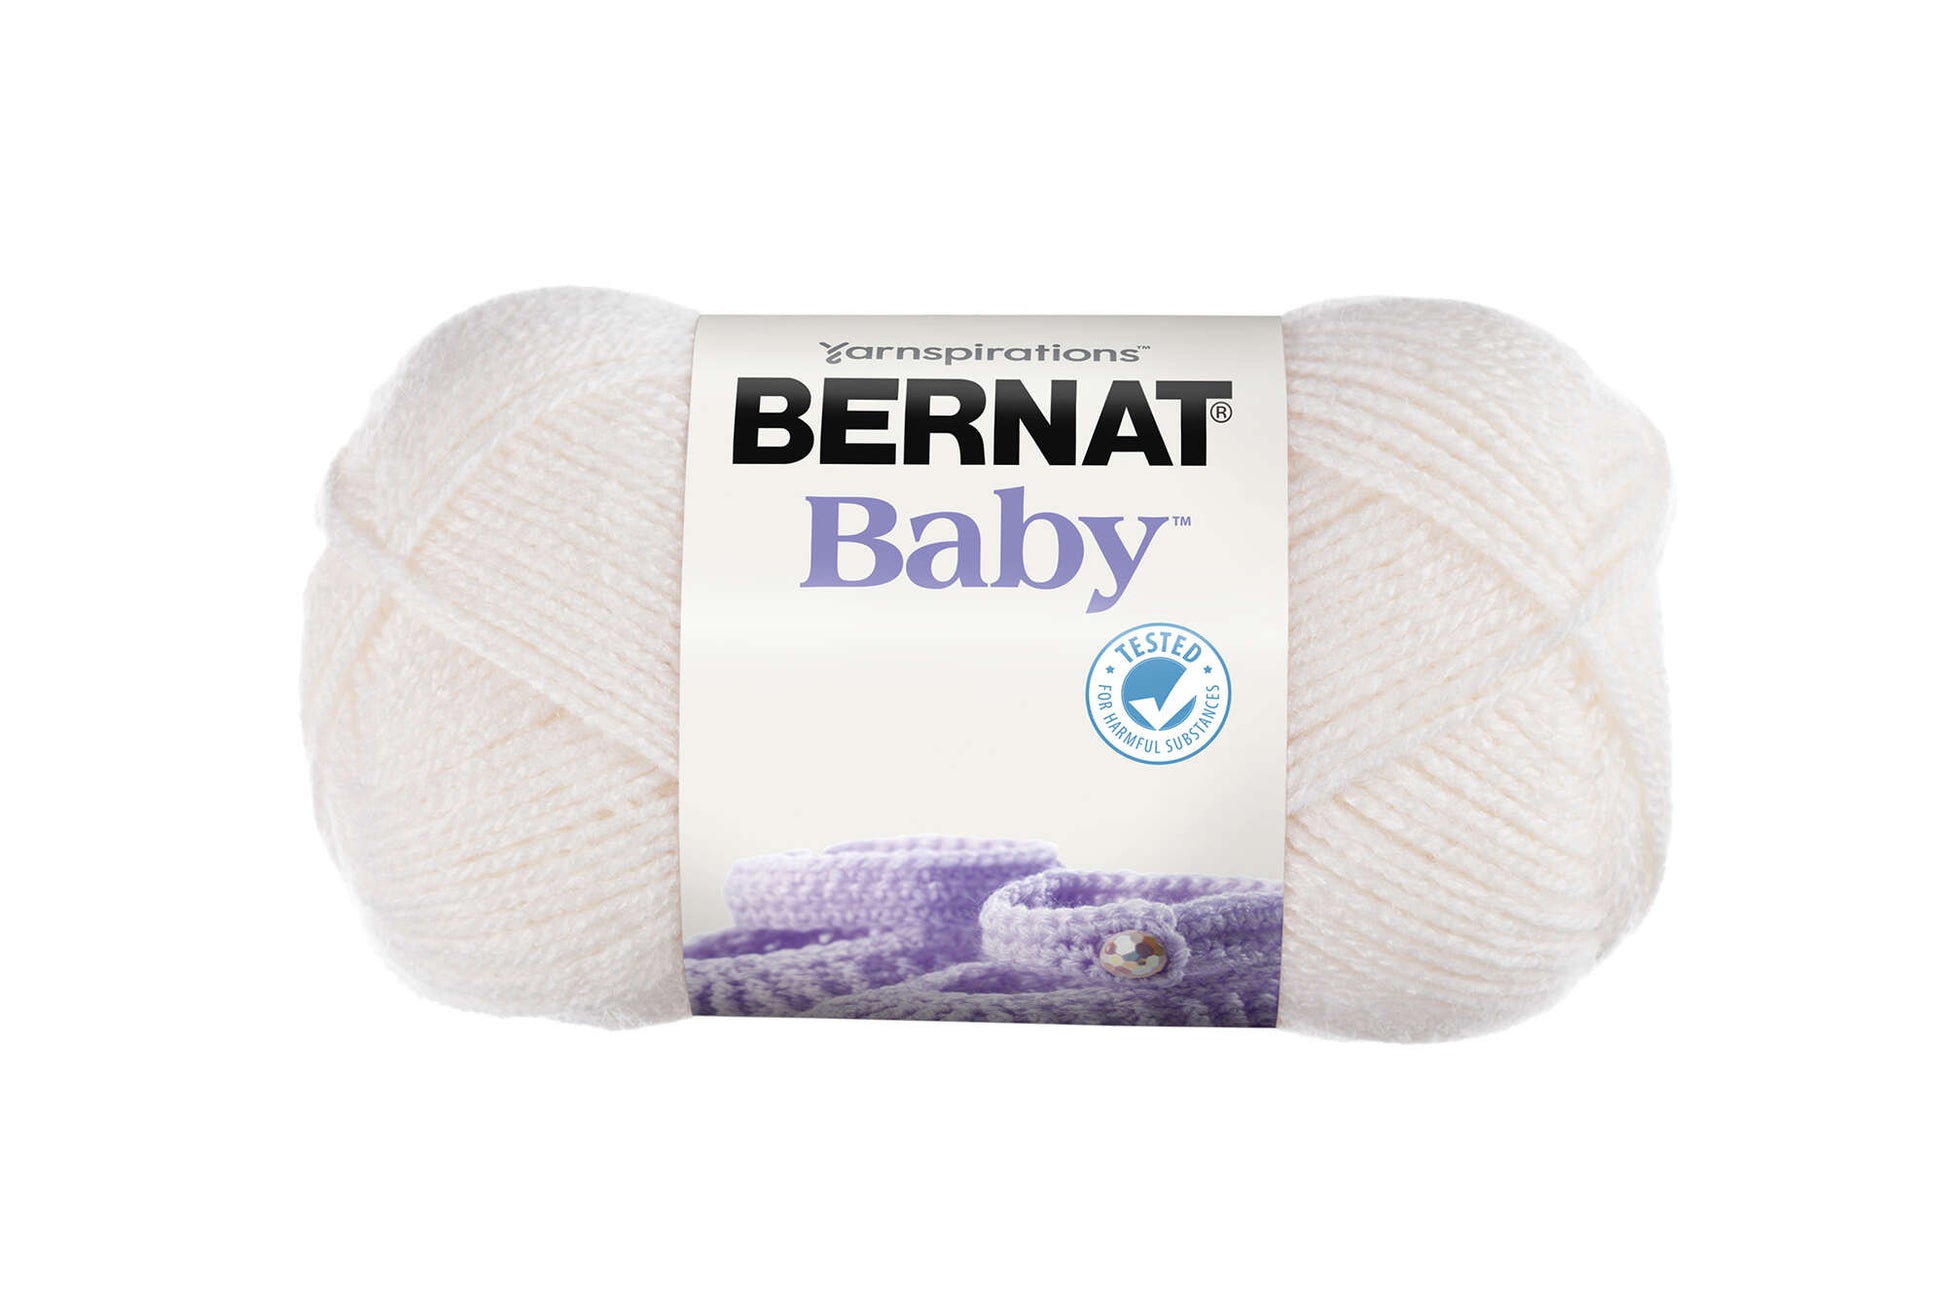 Bernat Baby Yarn - Discontinued Shades